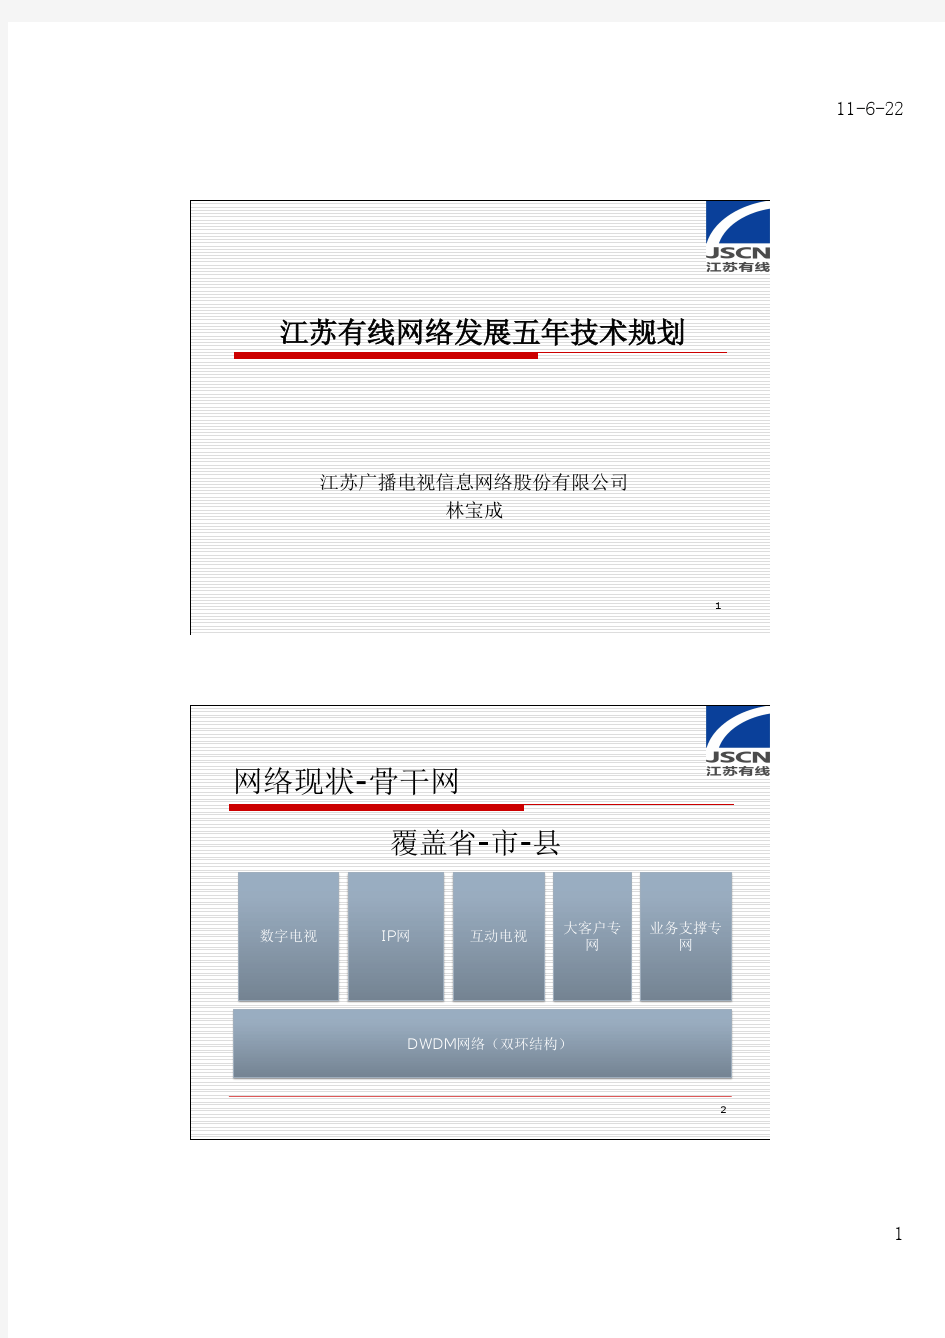 1 江苏有线网络发展五年技术规划